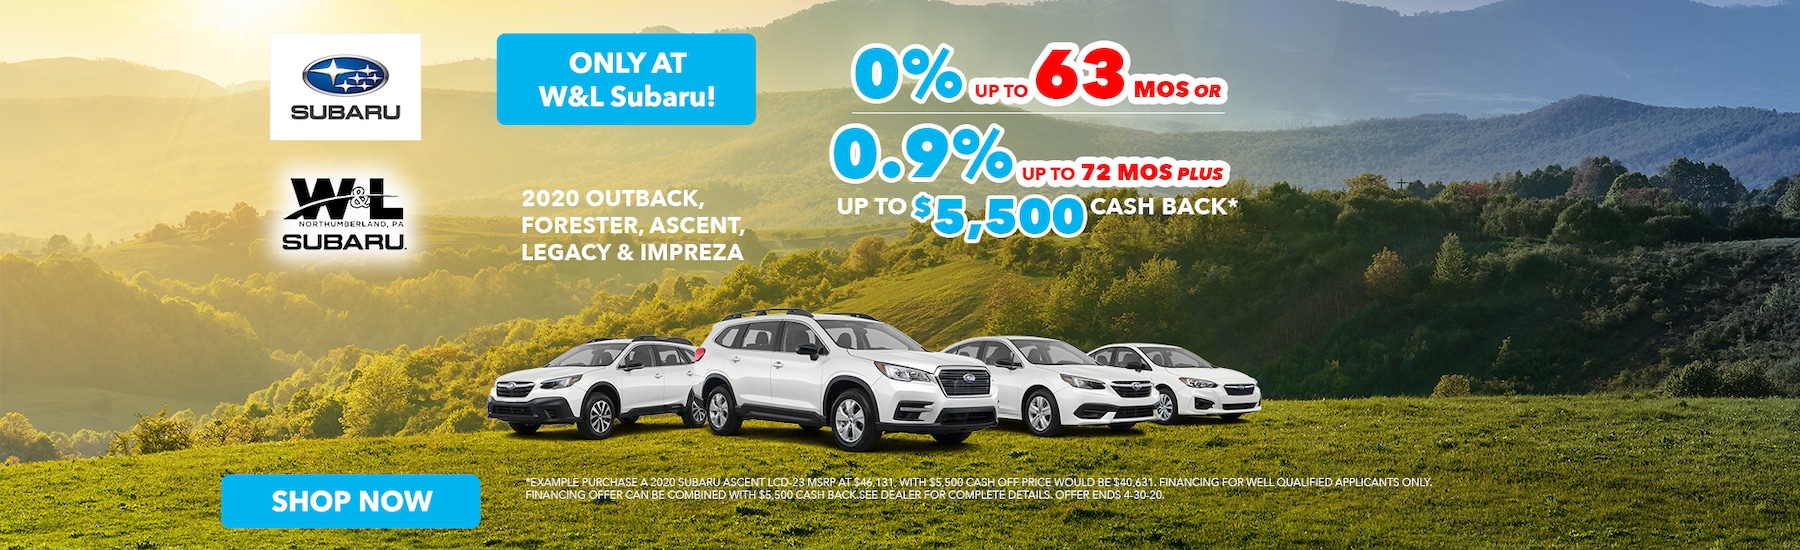 Subaru Dealership Northumberland PA | W&L Subaru | New Car Dealer